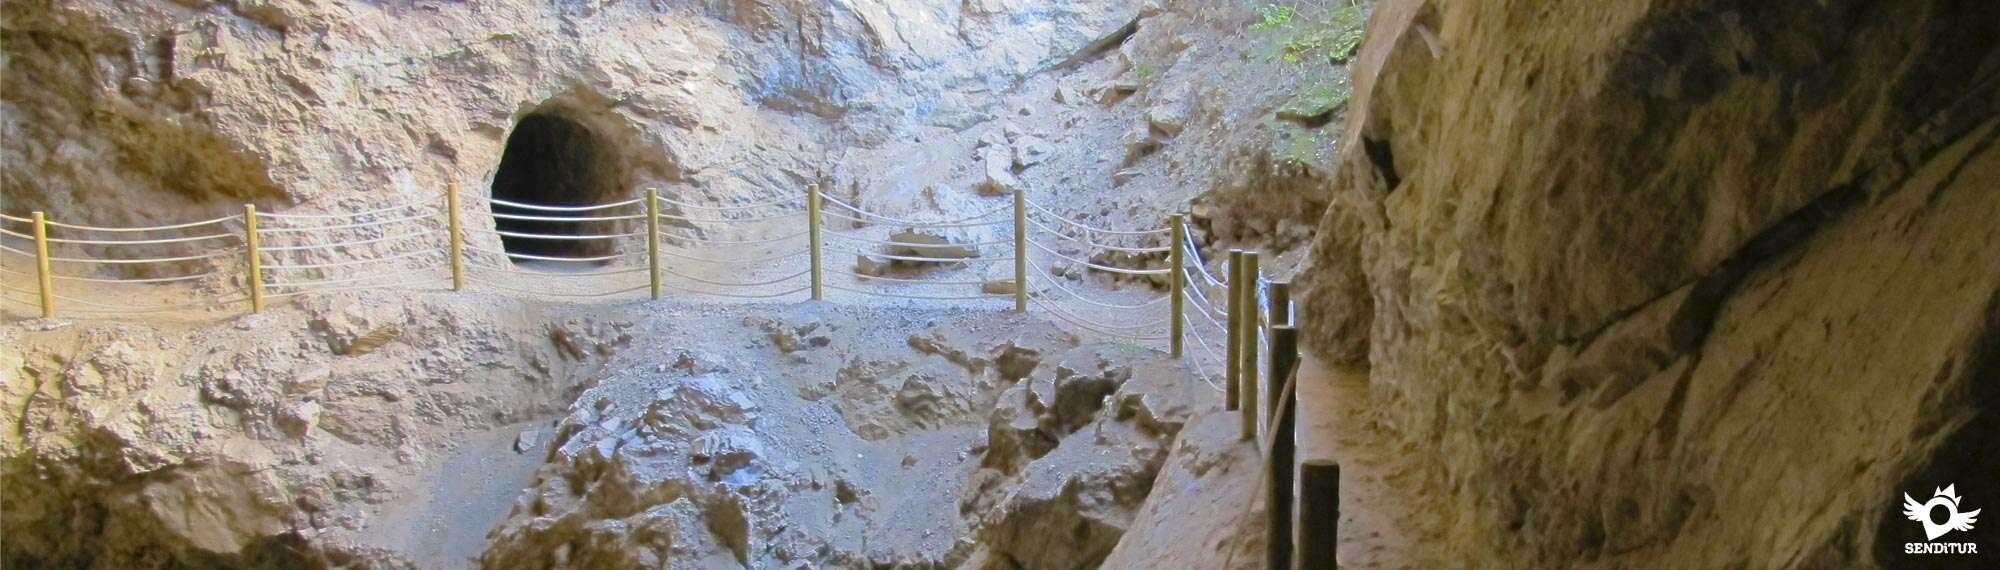 Ancient Lead Mines of Jubera